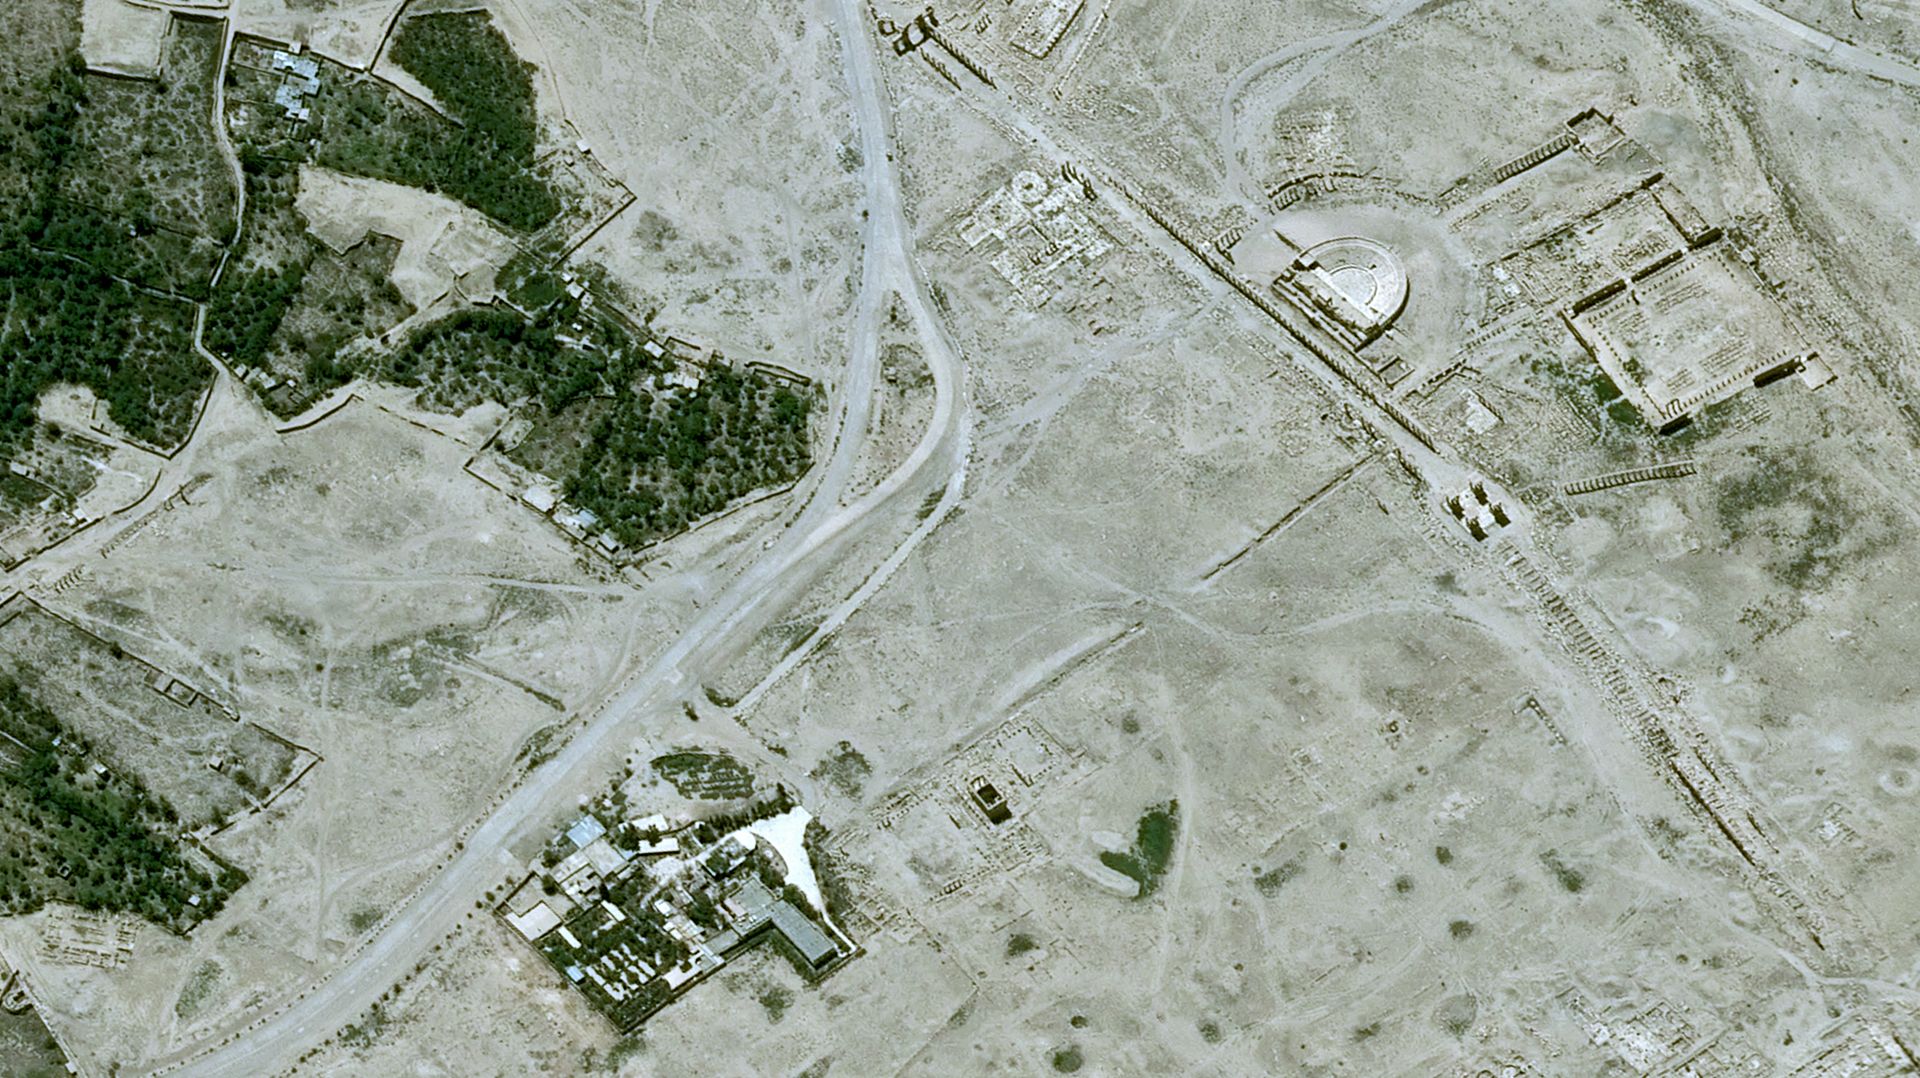 Satellite Pleiades - Palmyre - Syrie - temple de Baalshamin - avant destruction par EI - 22 mai 2015 - CNES – Airbus Defence and Space - UNITAR